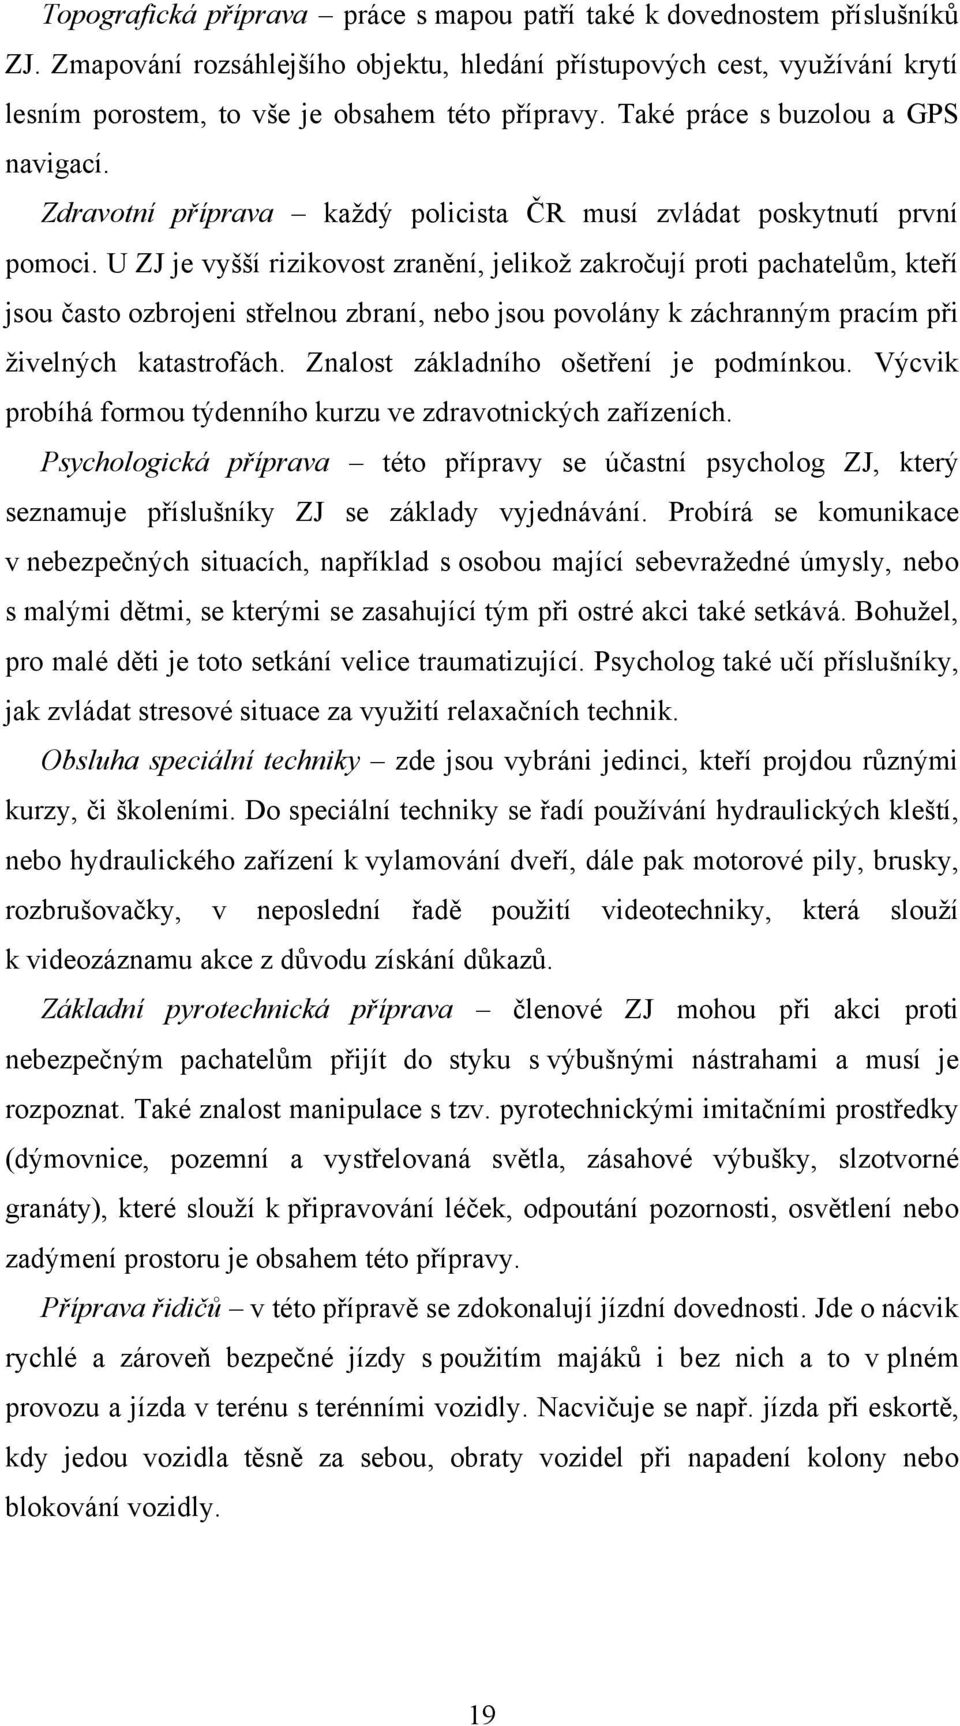 Zdravotní příprava kaţdý policista ČR musí zvládat poskytnutí první pomoci.